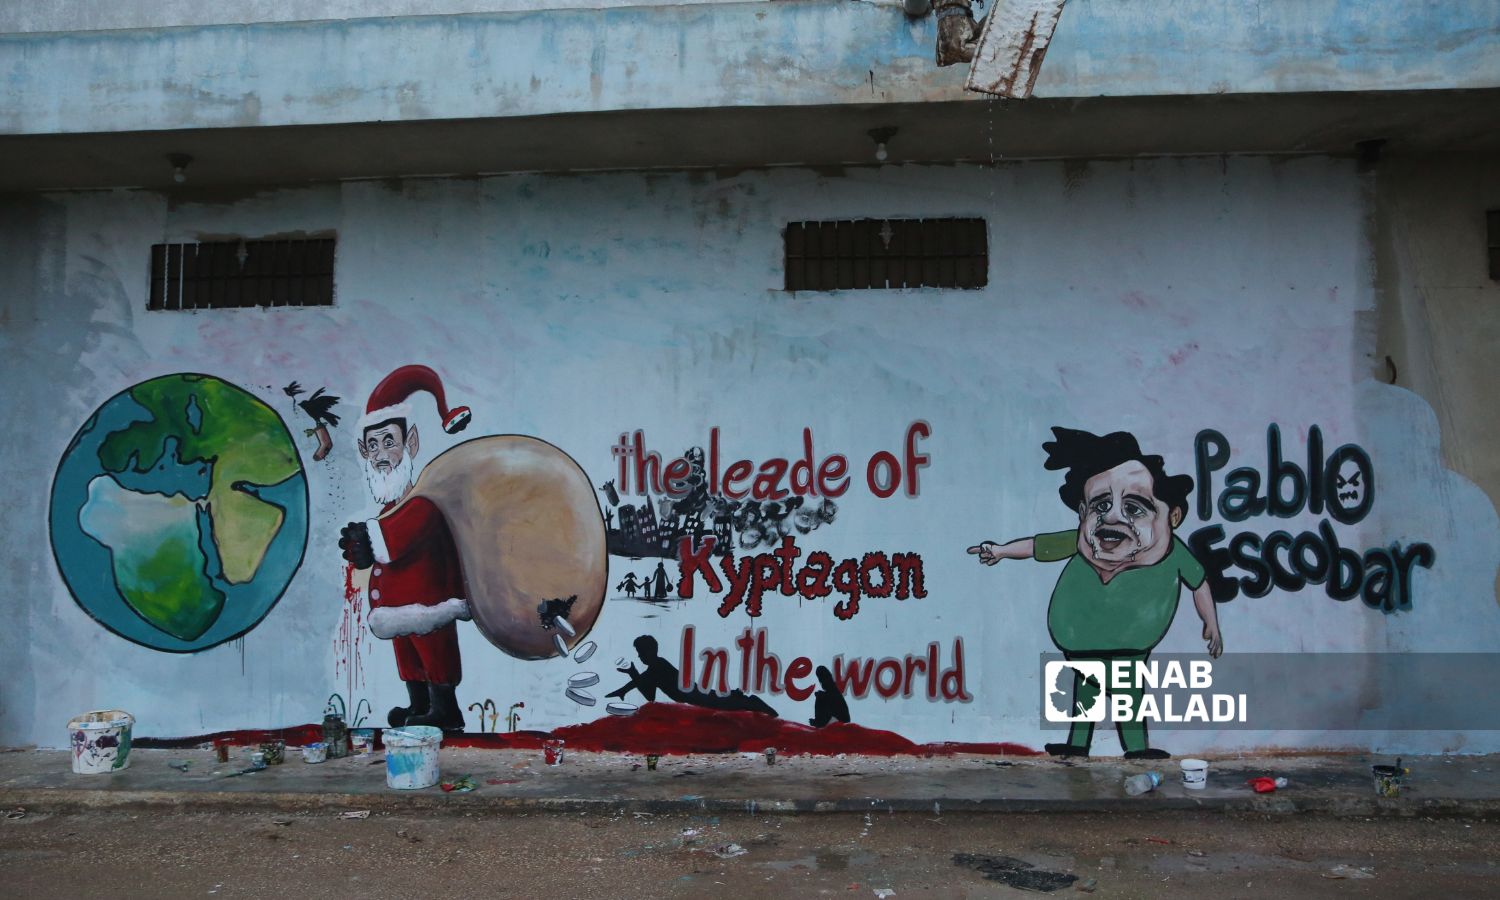 الرسام عزيز أسمر وأنيس حمدون، يرسمان جدارية بمناسبة رأس السنة الميلادية، تظهر بشار الأسد بشخصية بابا نويل وهو يوزع حبوب الكبتاجون في مدينة بنش - 25 كانون الأول 2022 (عنب بلدي / أنس الخولي)